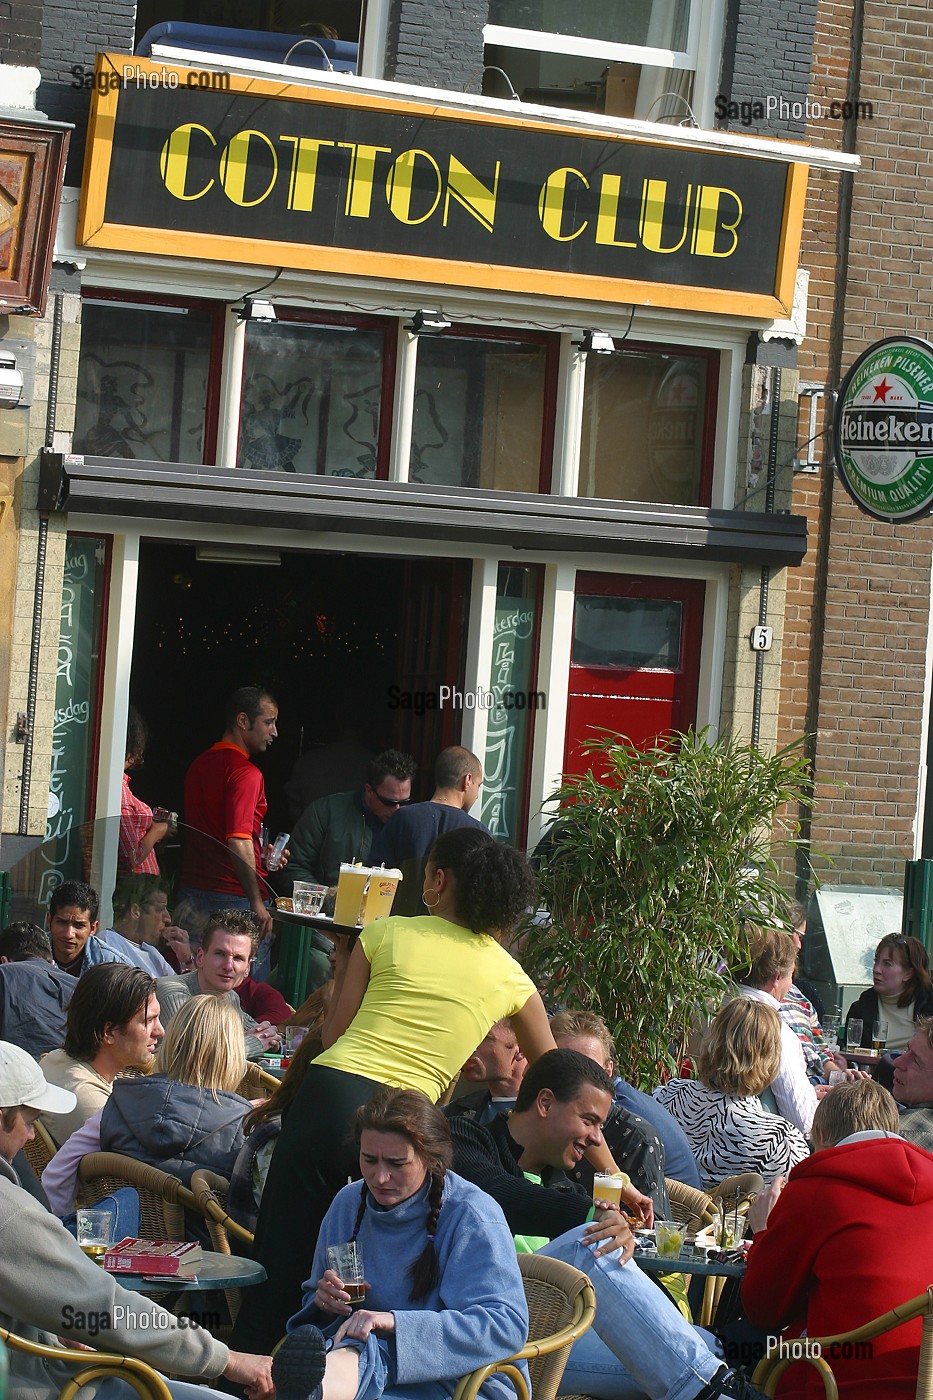 CAFE 'COTTON CLUB' SUR LA PLACE DE NIEUWMARKT, AMSTERDAM, PAYS-BAS 